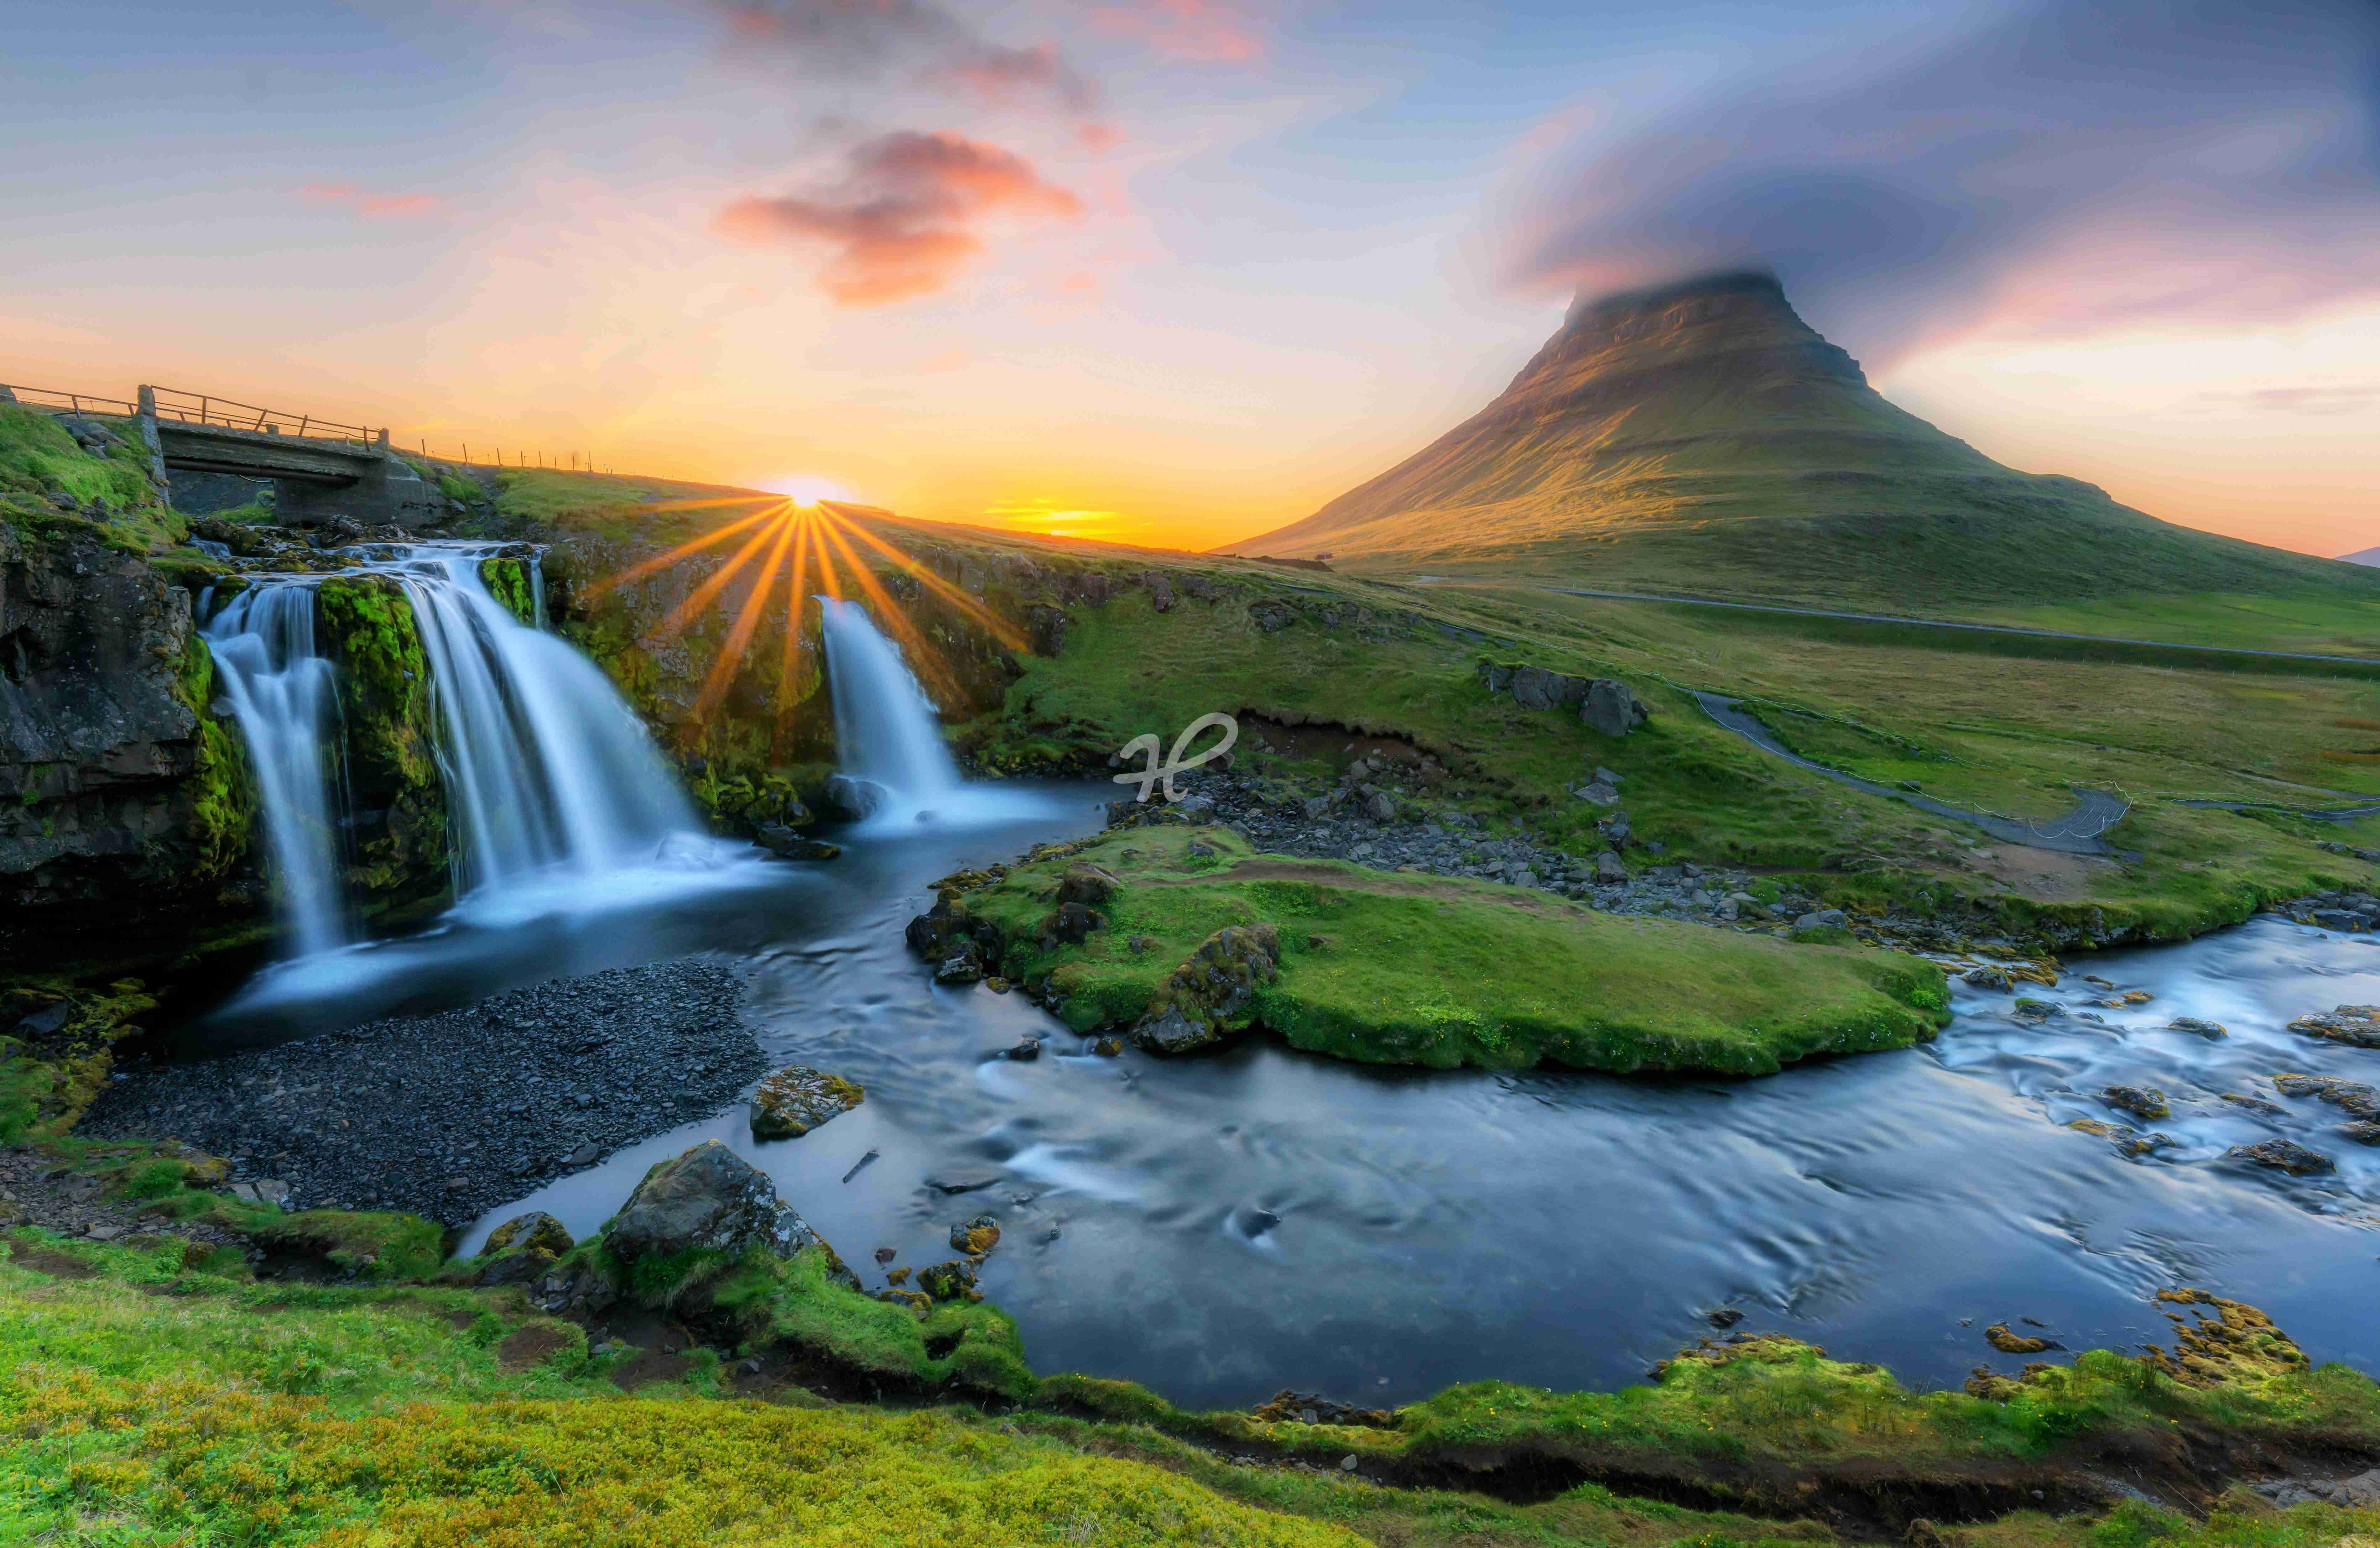 Sonne, Berge und Wasser auf Island mit Wasserfall